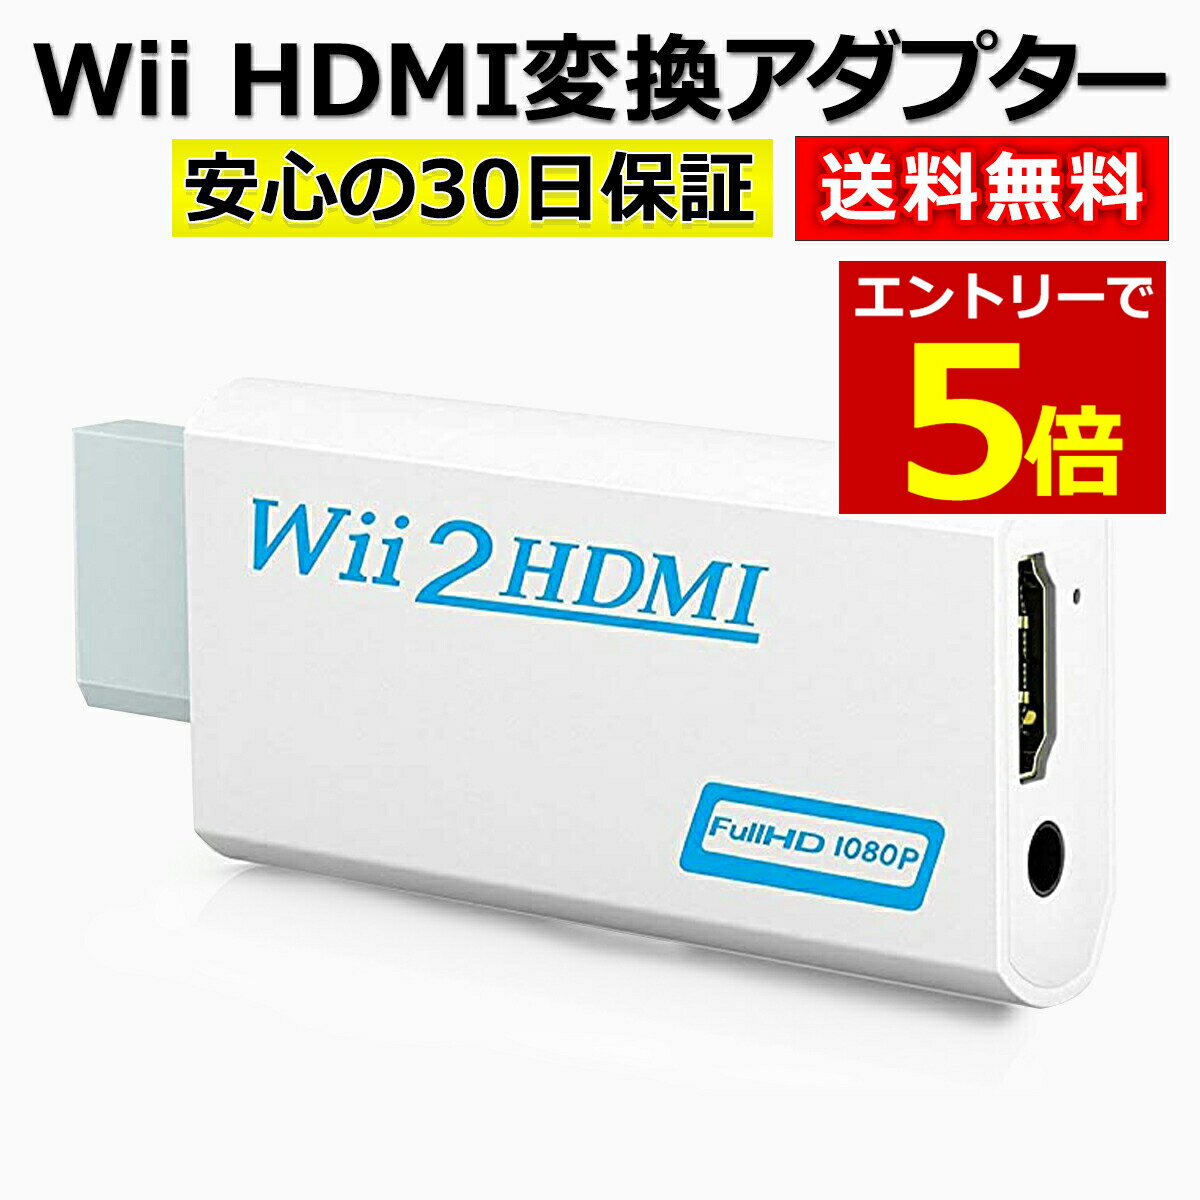 【5/15当店エントリー最大P6倍&マラソン!】Wii HDMI 変換 アダプター コンバーター HDMI接続 ウィー 任天堂 hdmi 接続 コネクター テレビ 変換アダプター